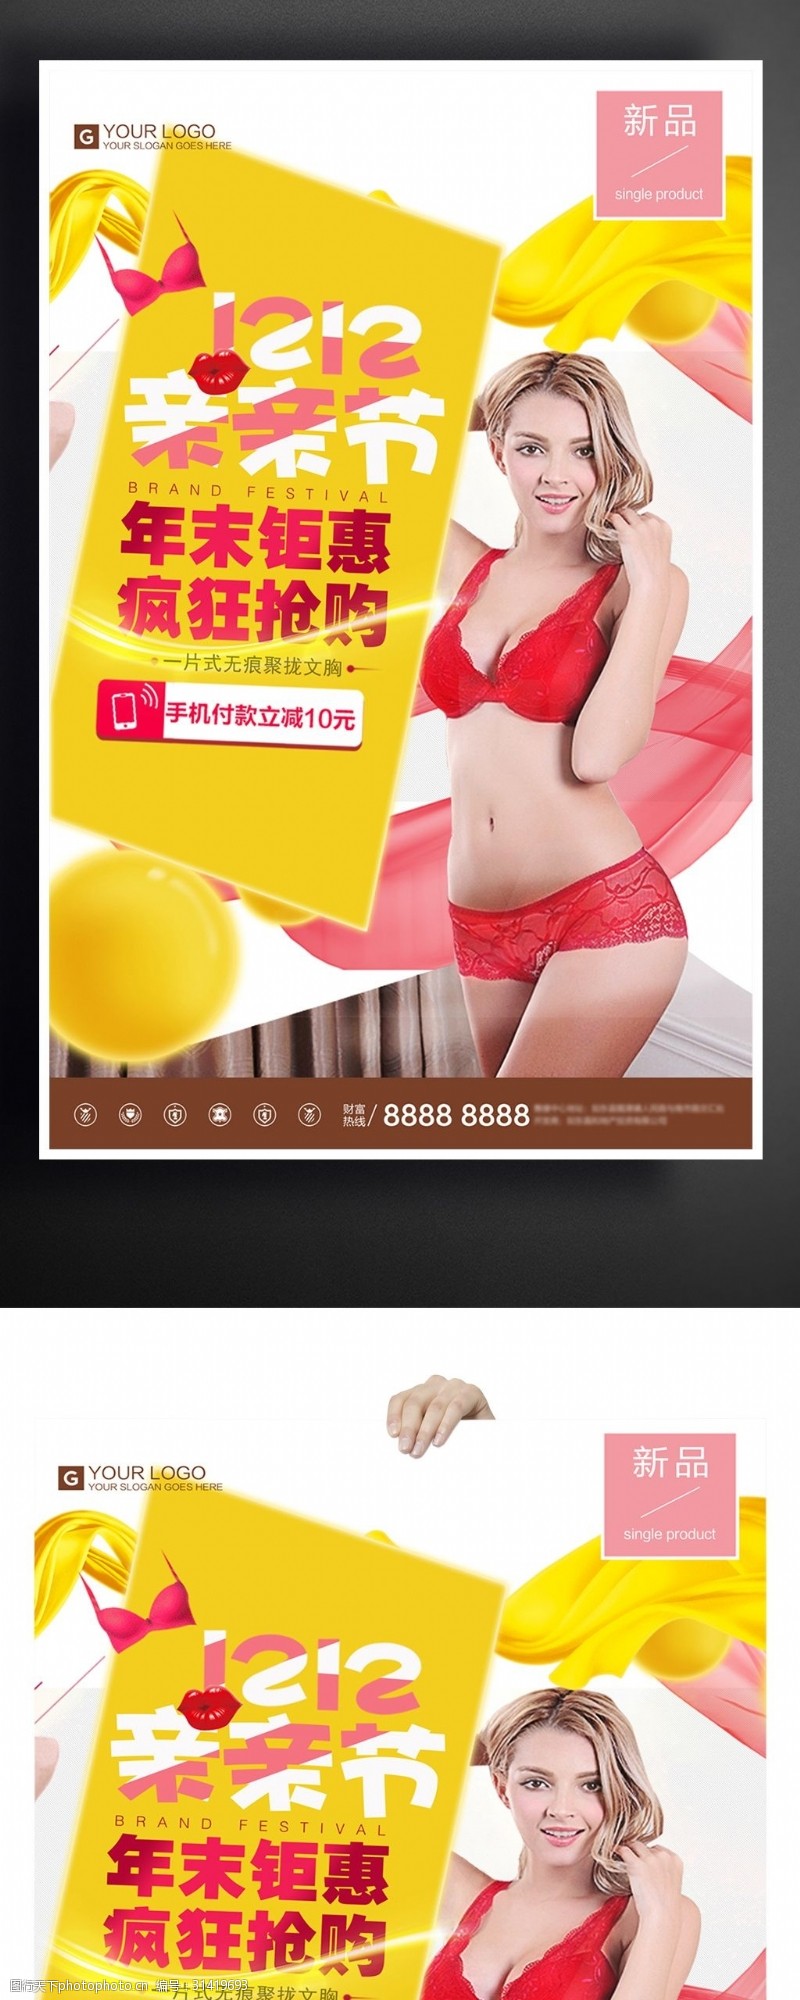 微商内衣海报时尚炫彩亲亲节内衣节宣传促销海报